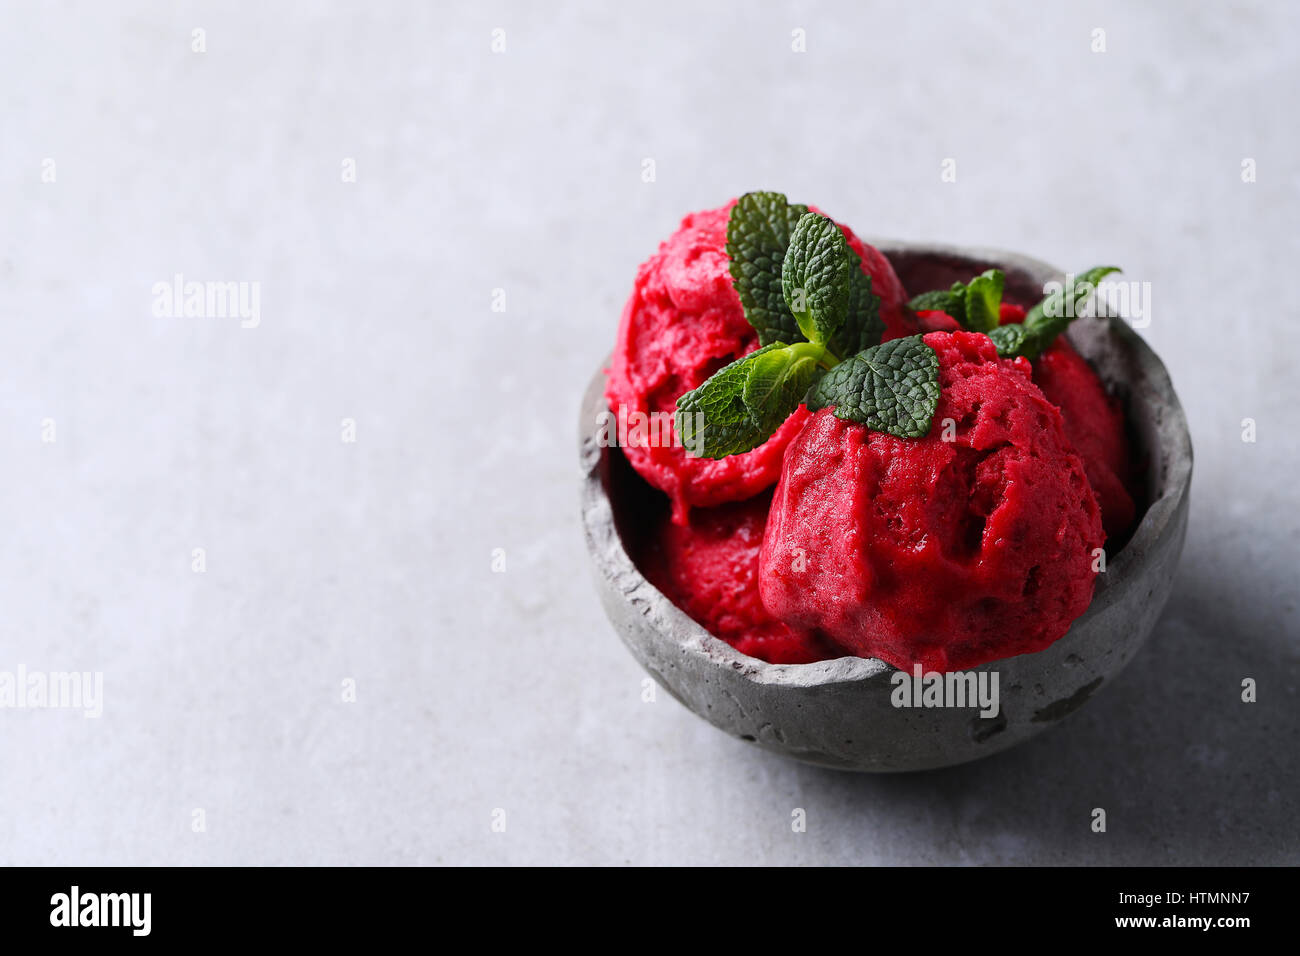 Ice cream. Delicious, strawberry gelato in a bowl Stock Photo